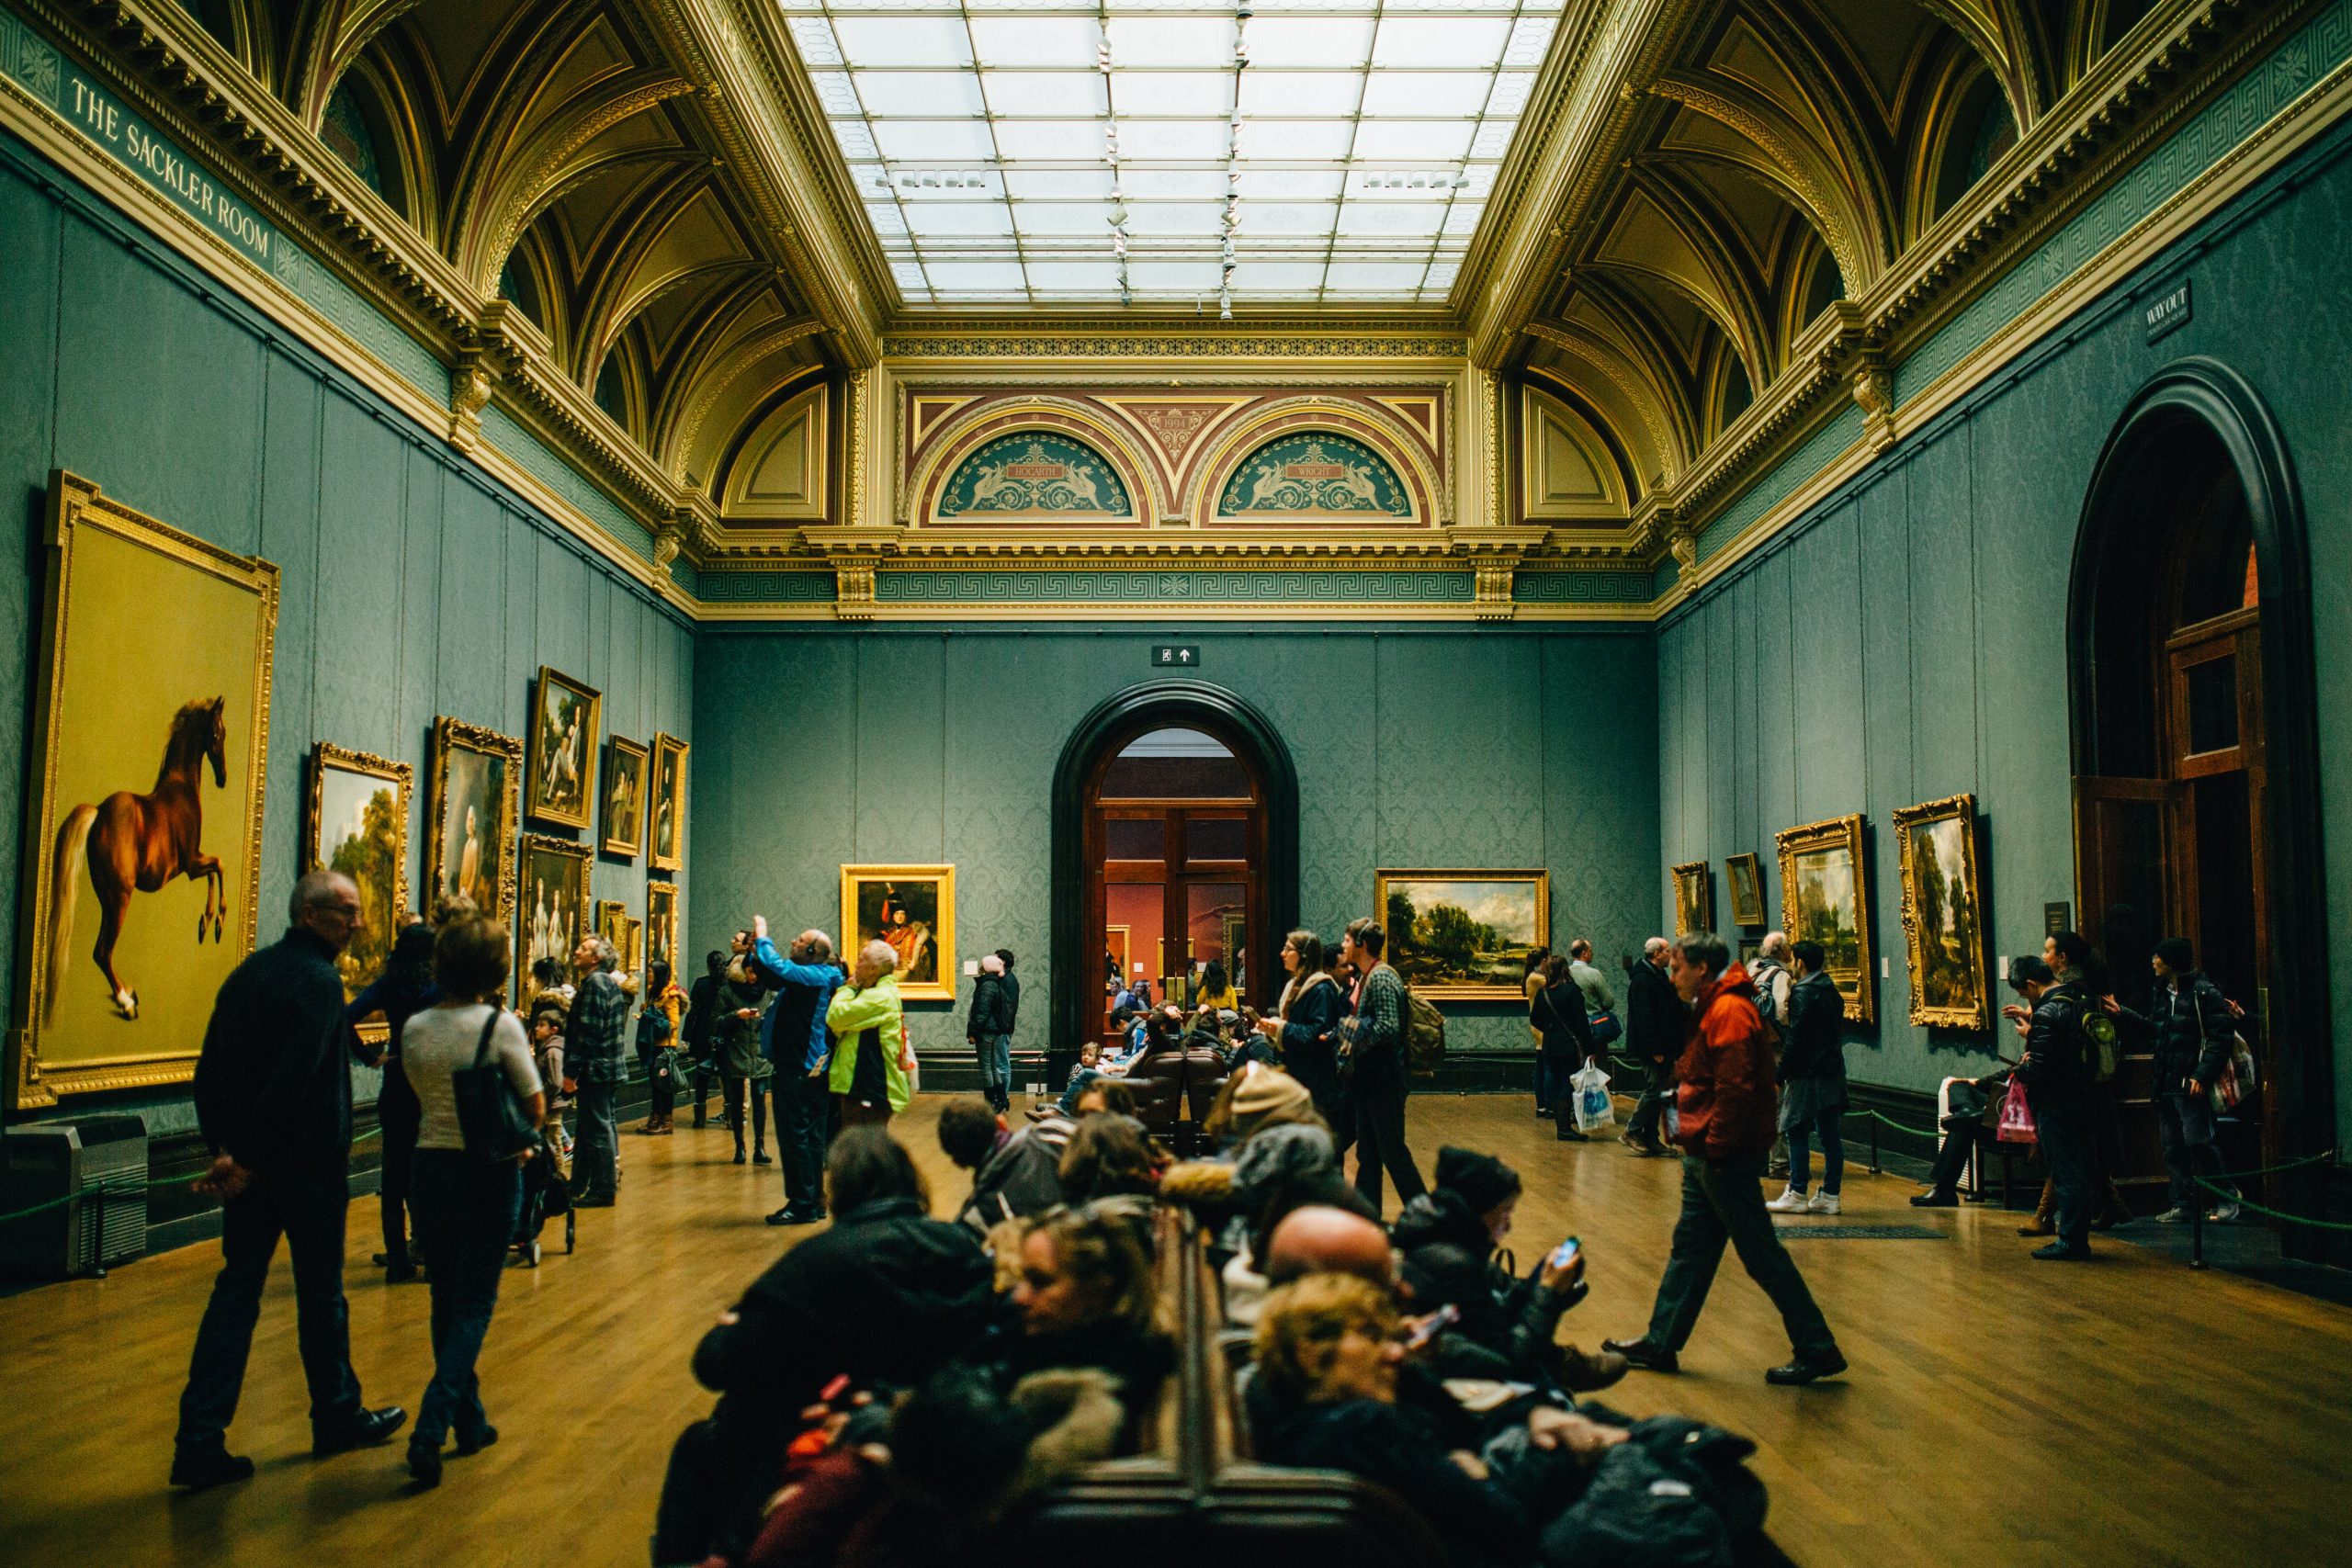 People enjoying art at a museum.